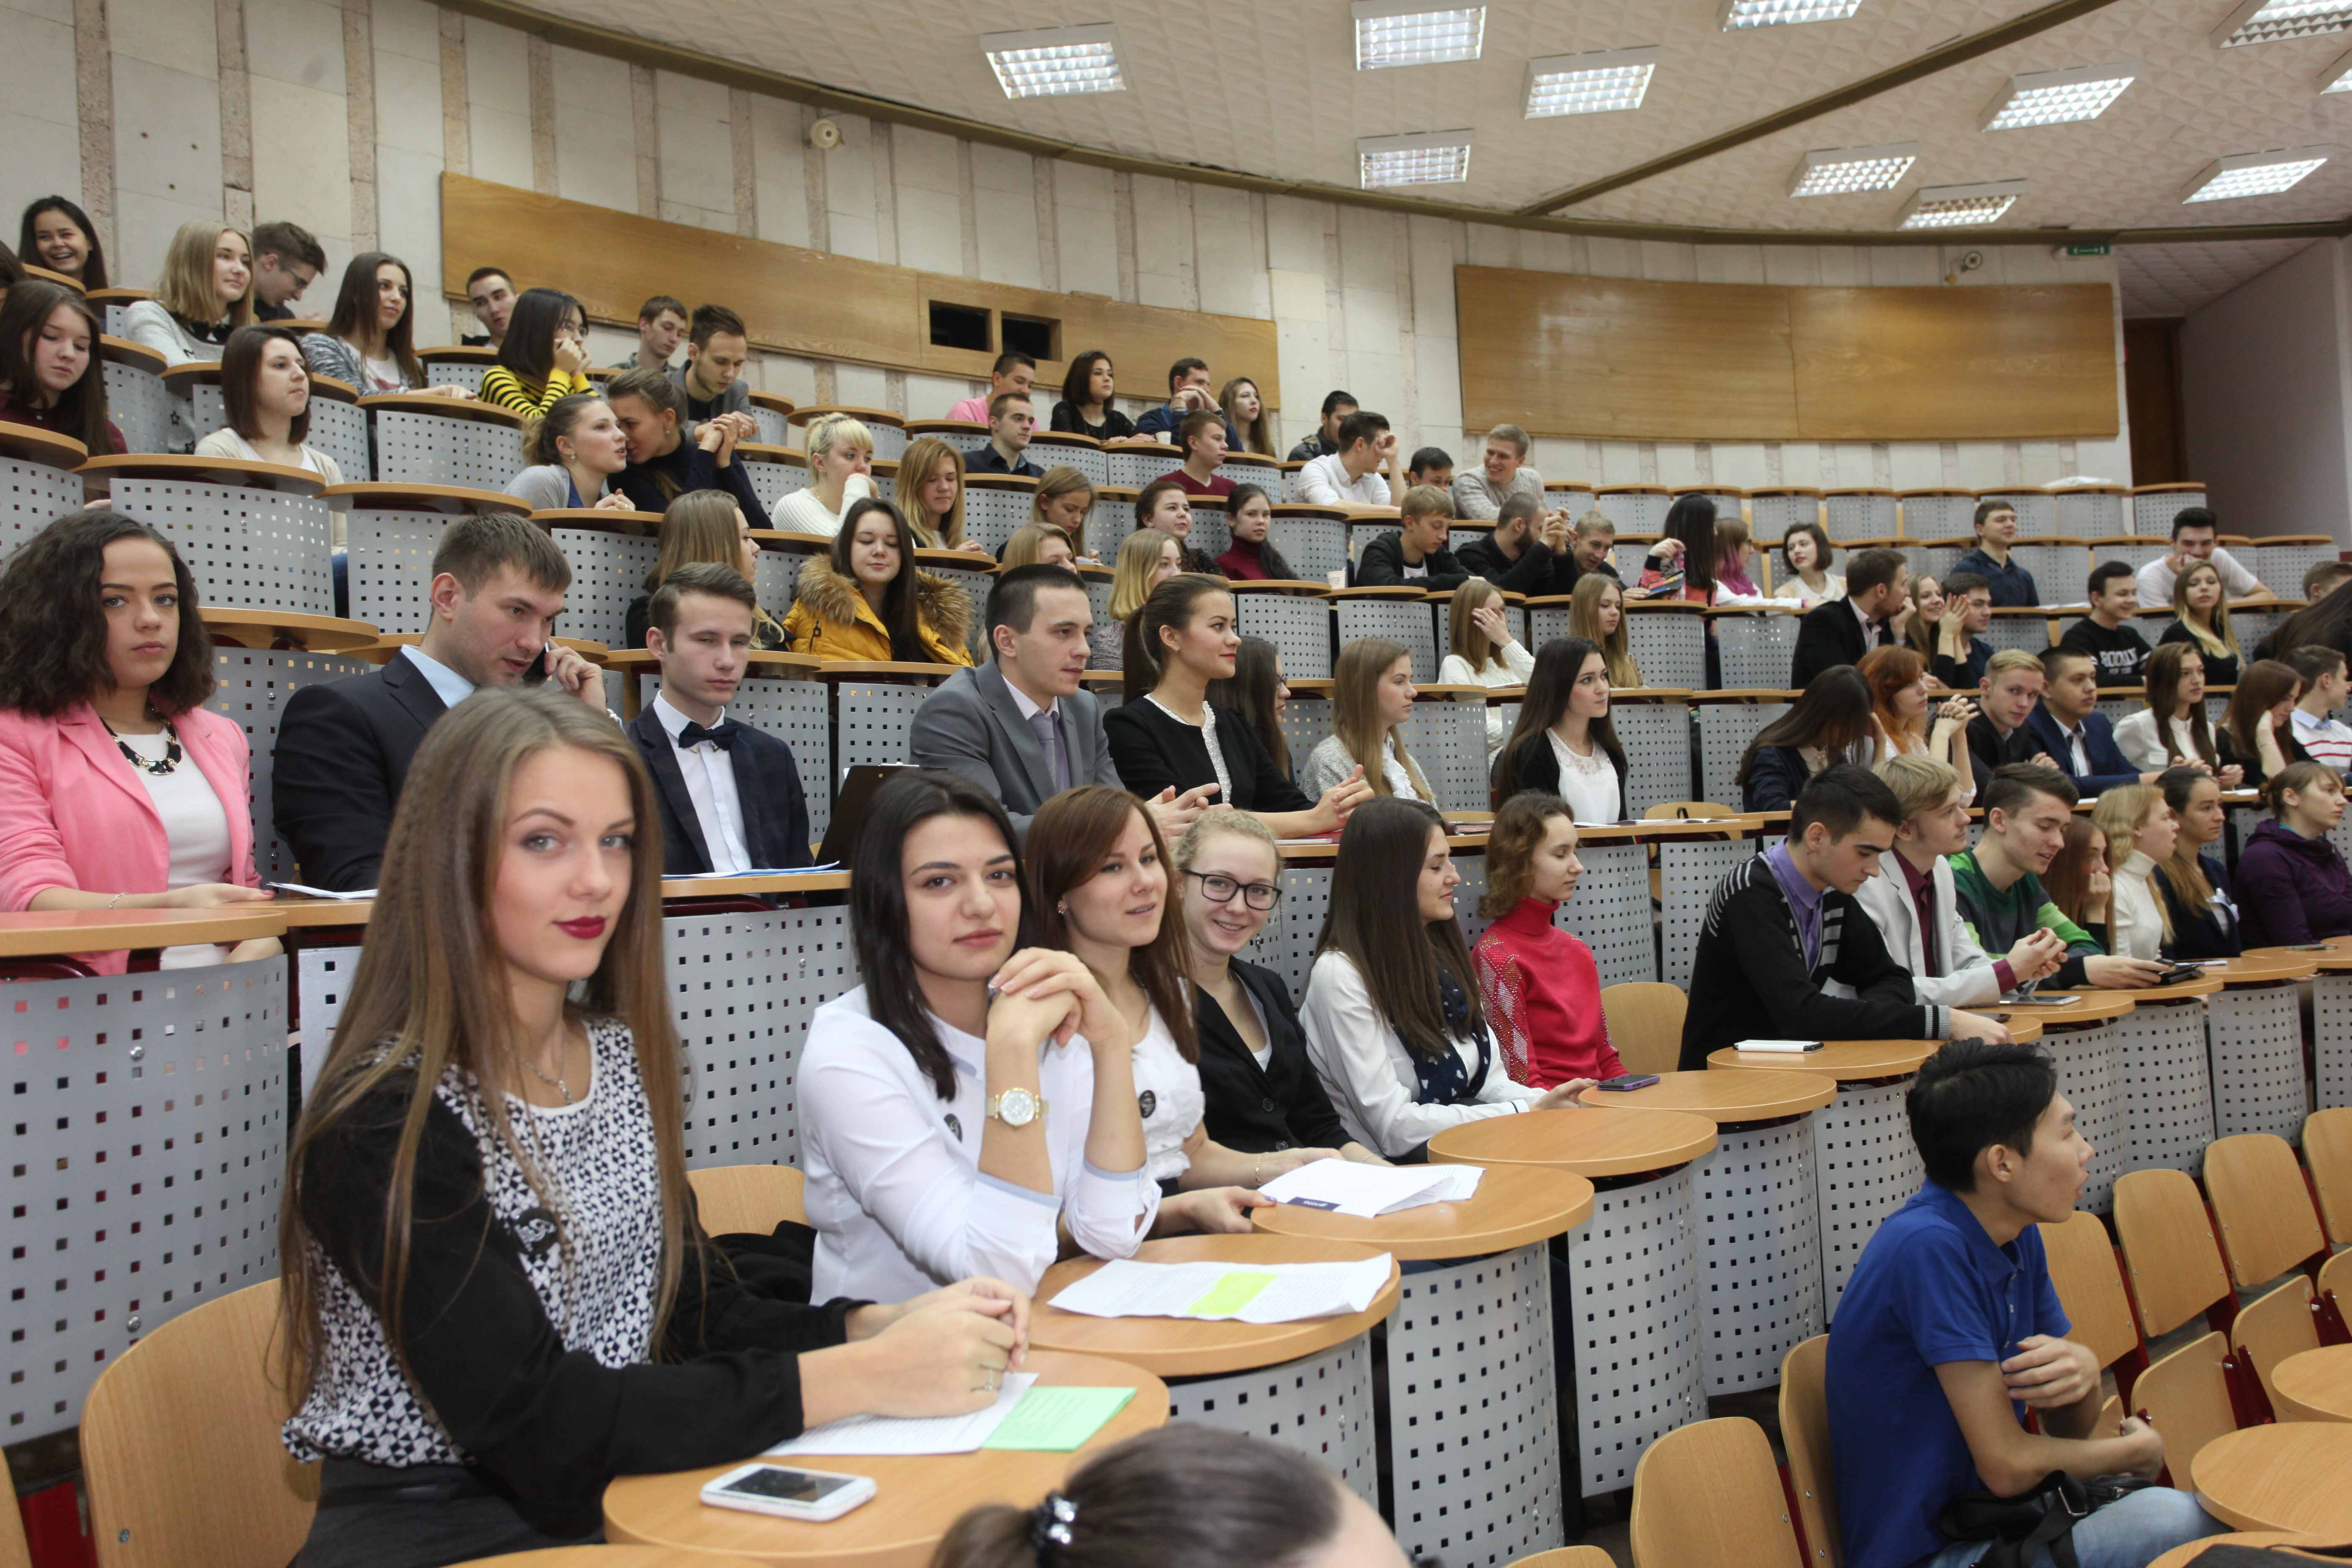 V Всероссийский Фестиваль науки: конференция молодых экспертов в МосГУ